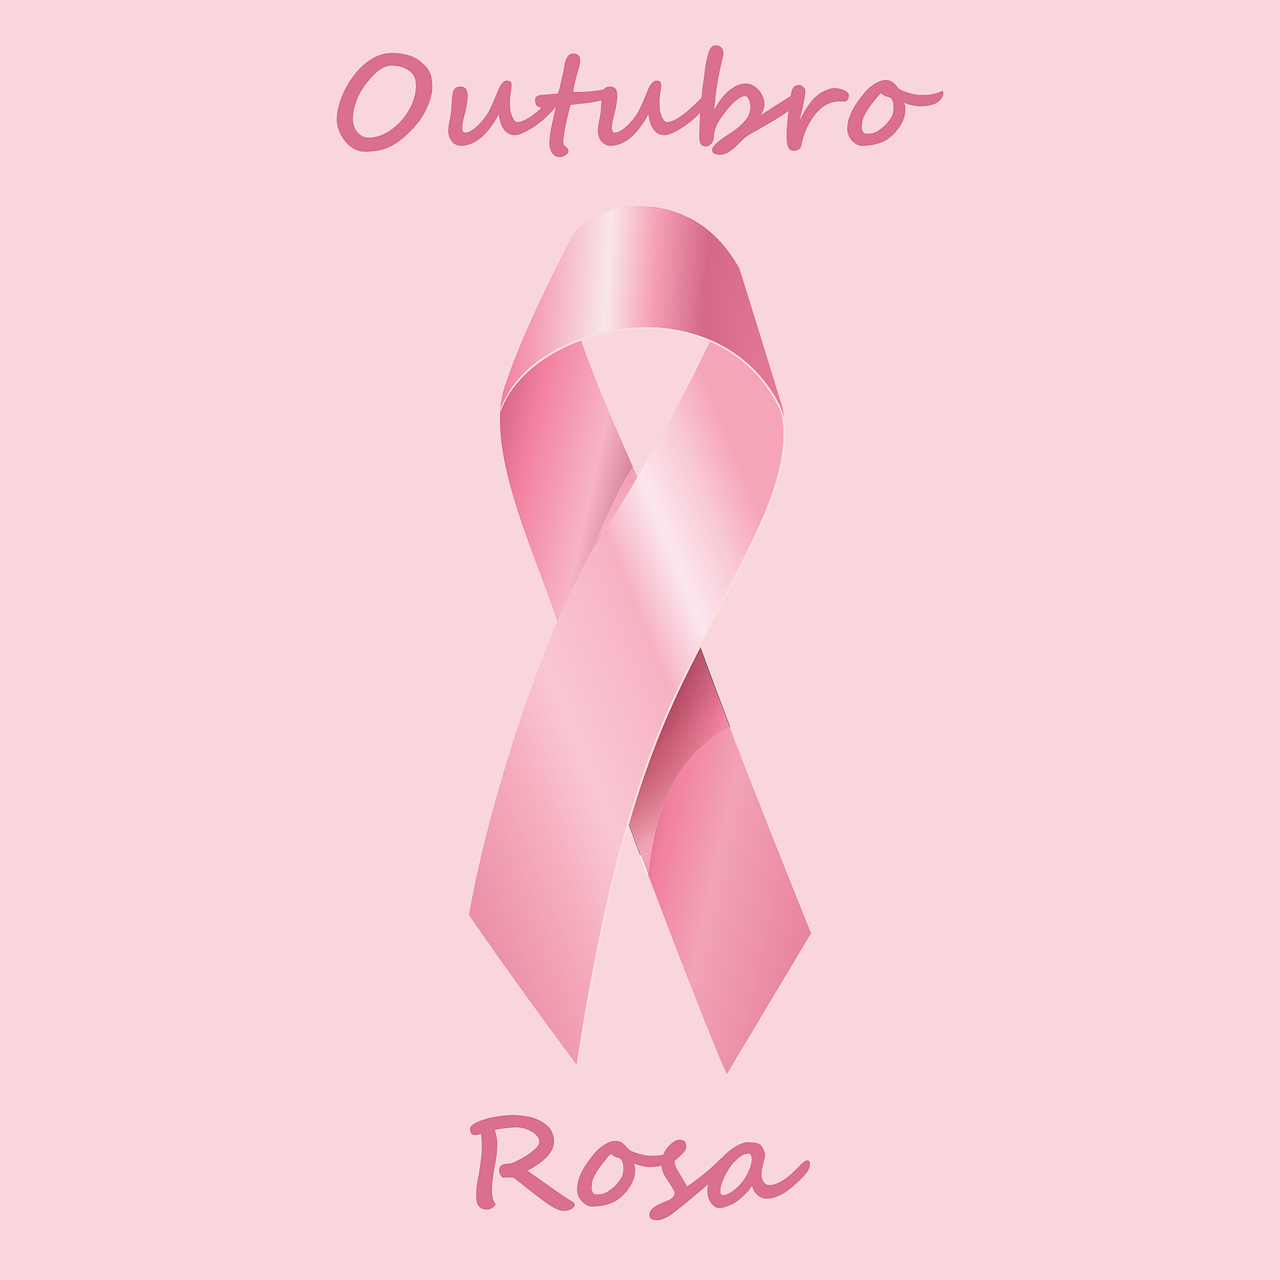 Imagem de um laço rosa com fundo rosado escrito outubro rosa.